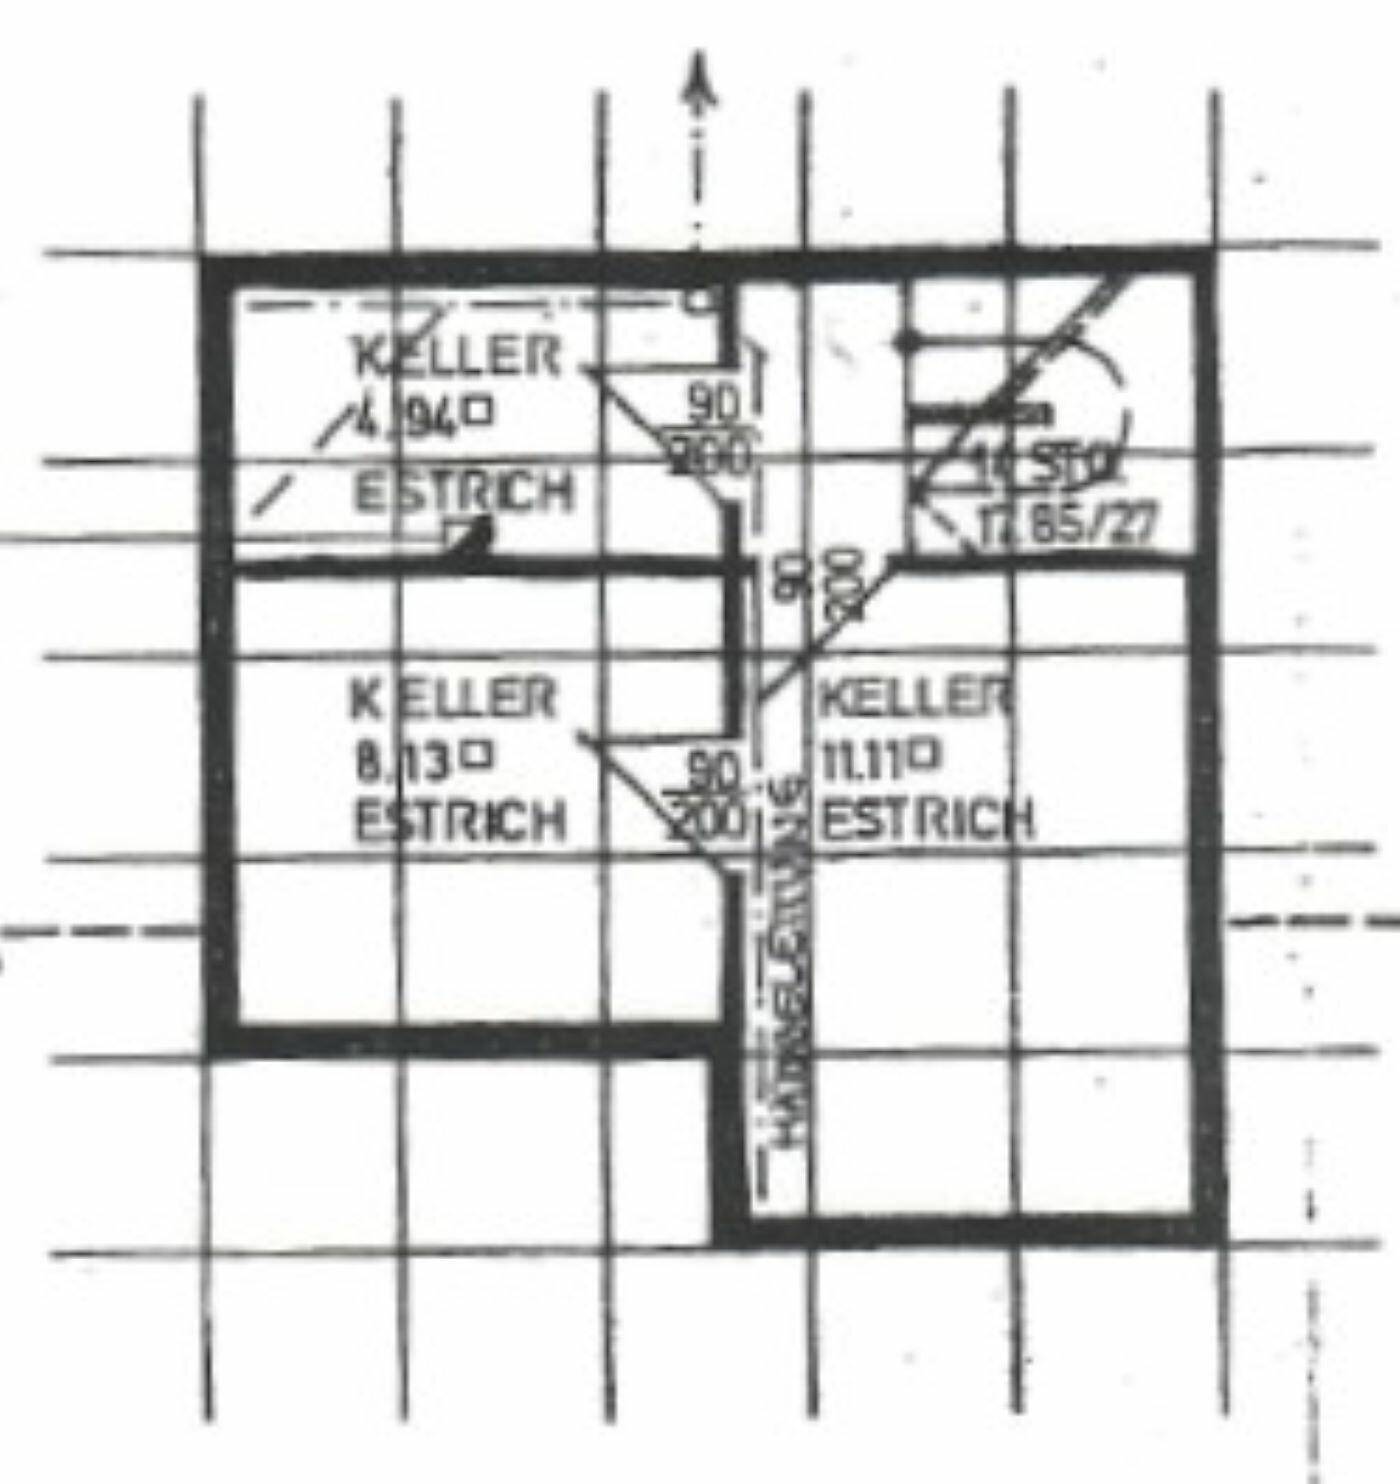 Plan Keller